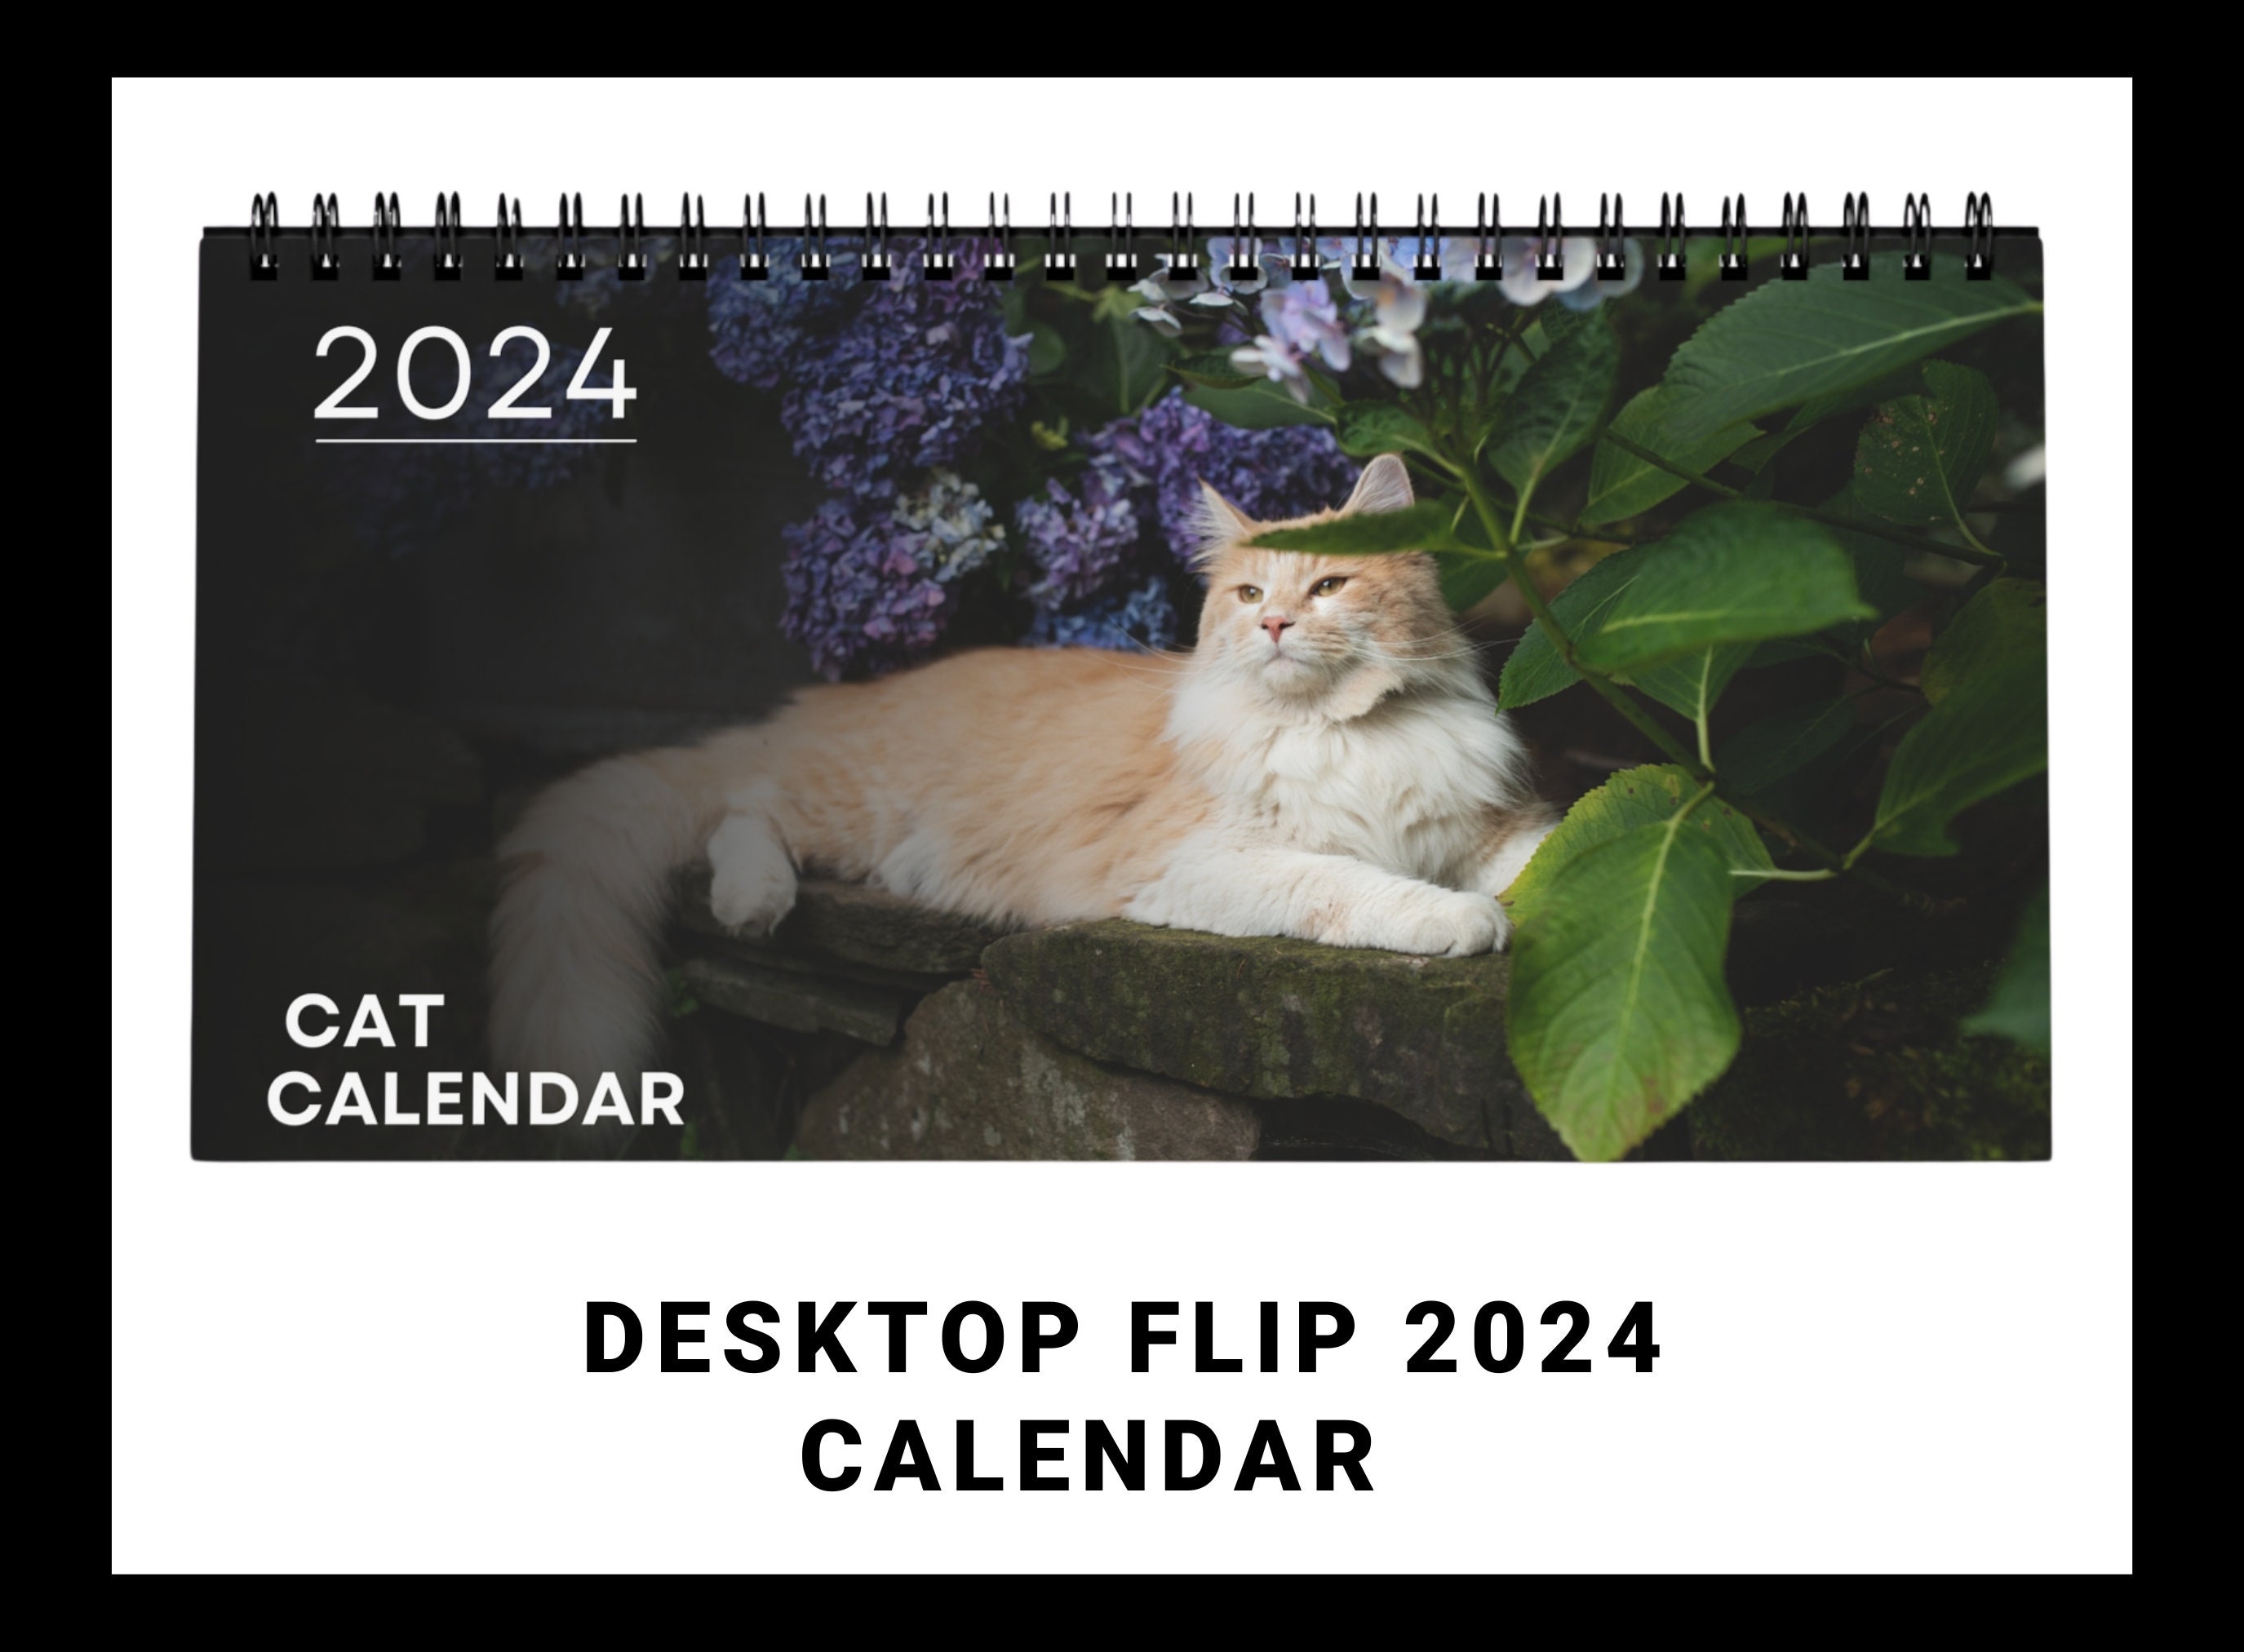 Calendrier photo 2024 les chatons chevalet bureau 12 mois